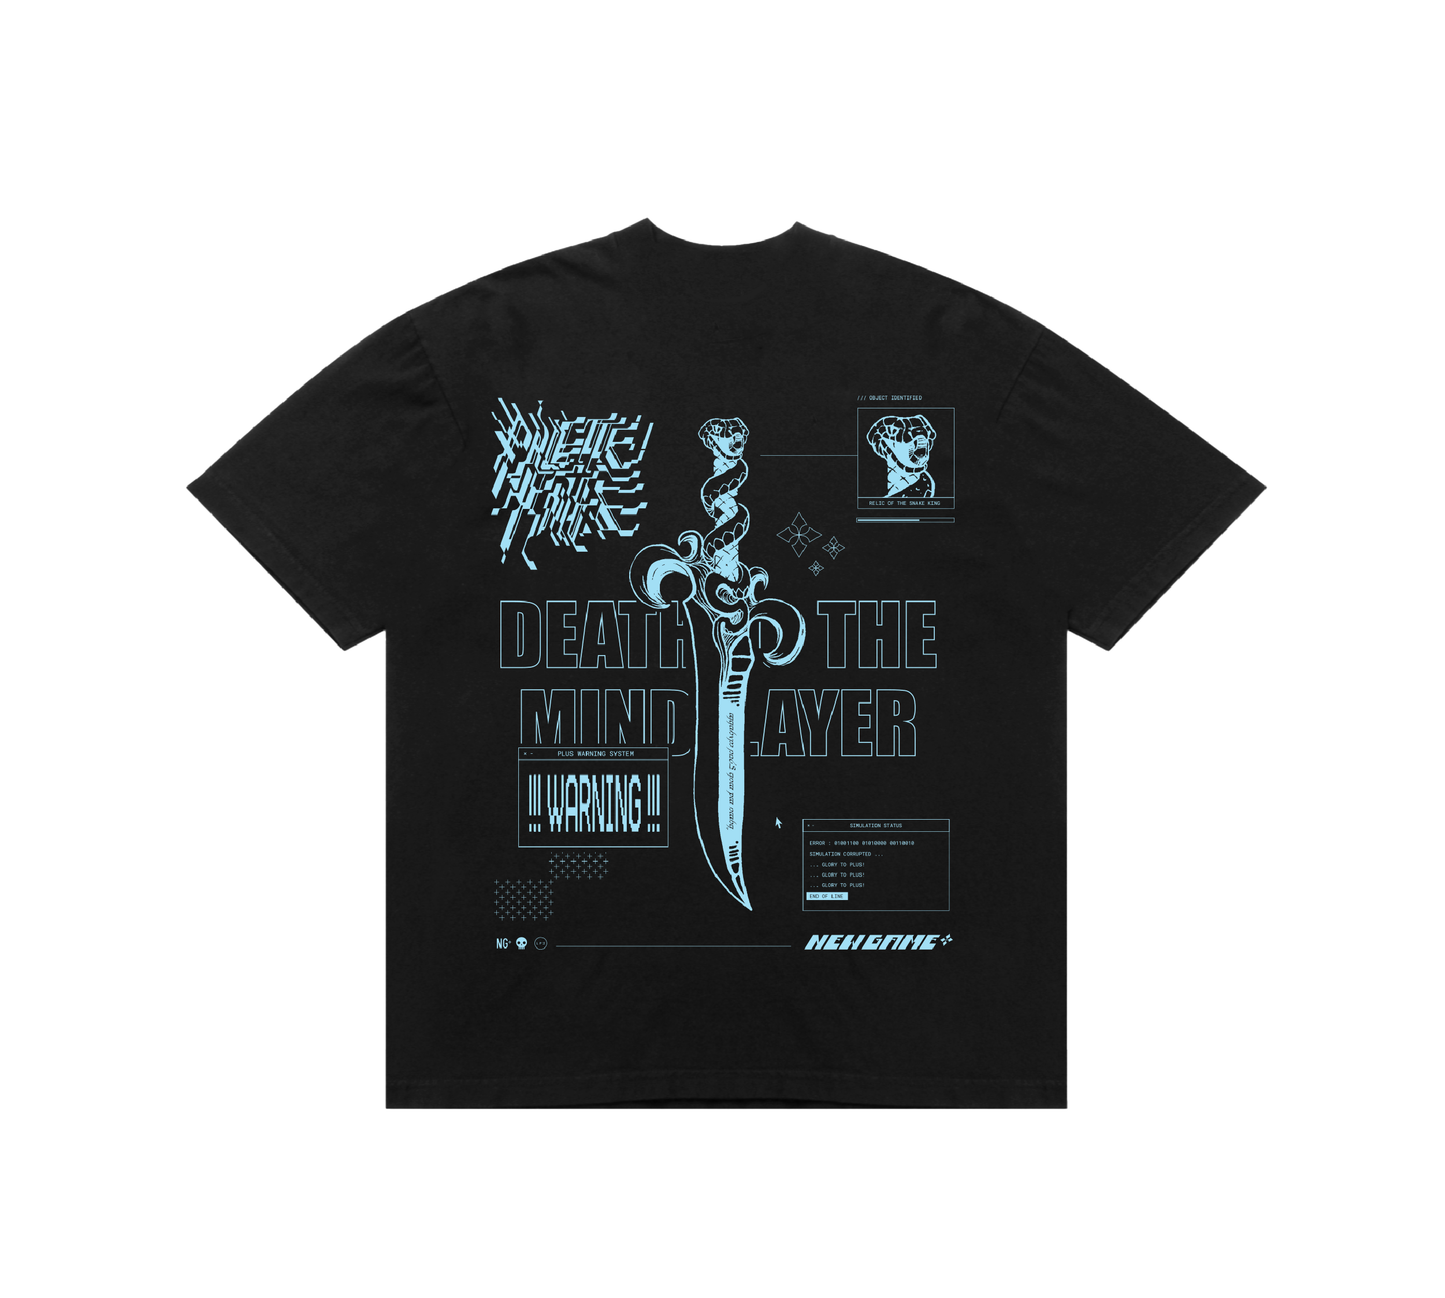 Palette Knife - "Cyber Grind" T-Shirt